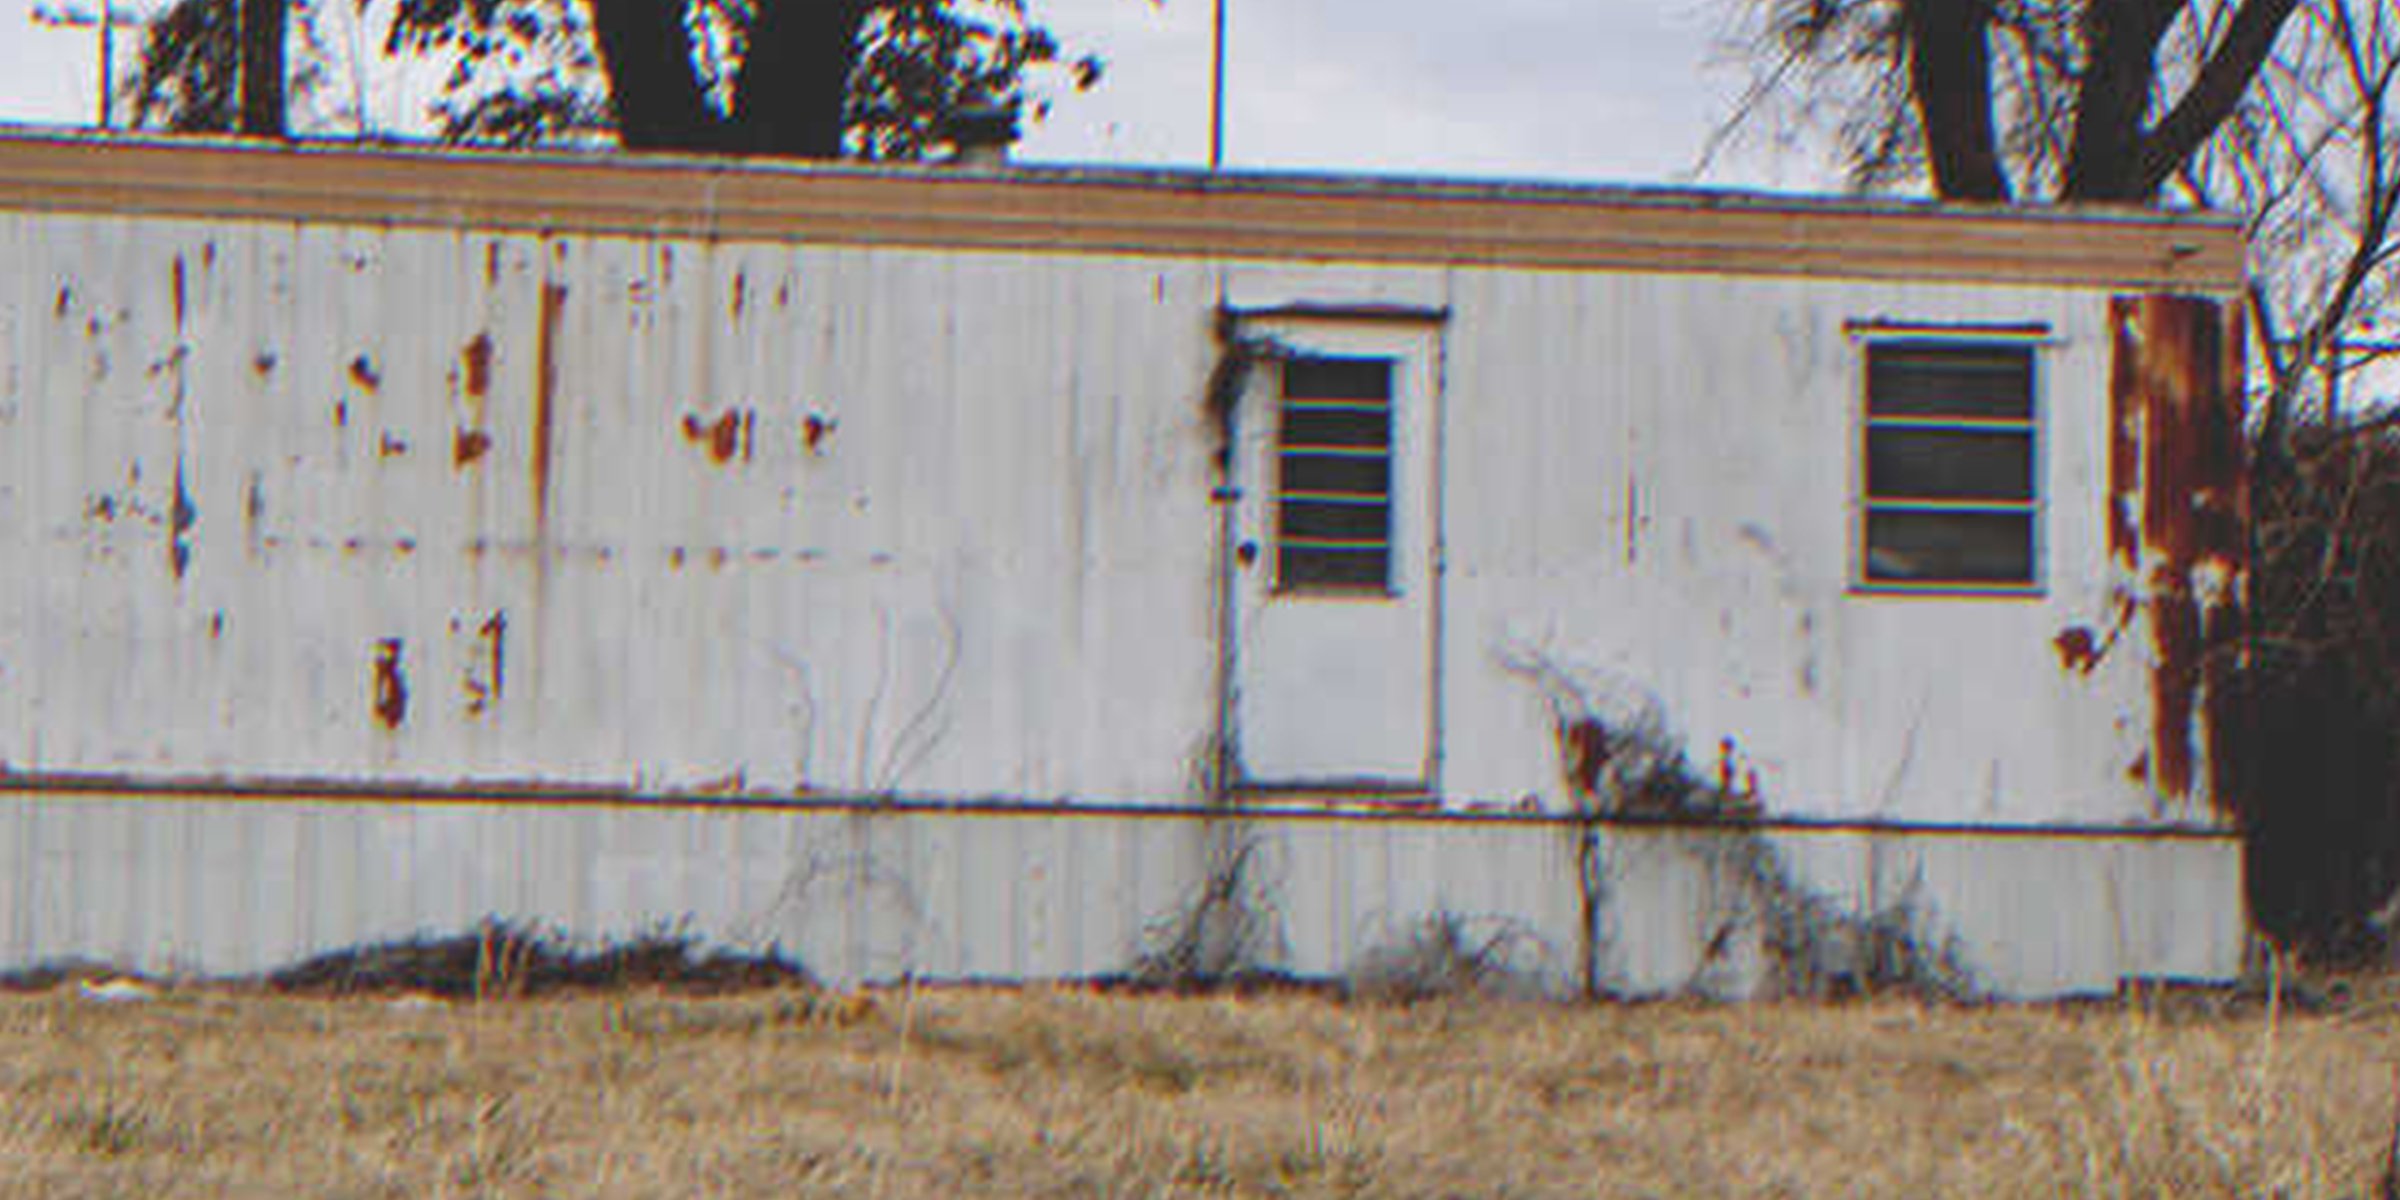 An abandoned trailer | Source: Shutterstock